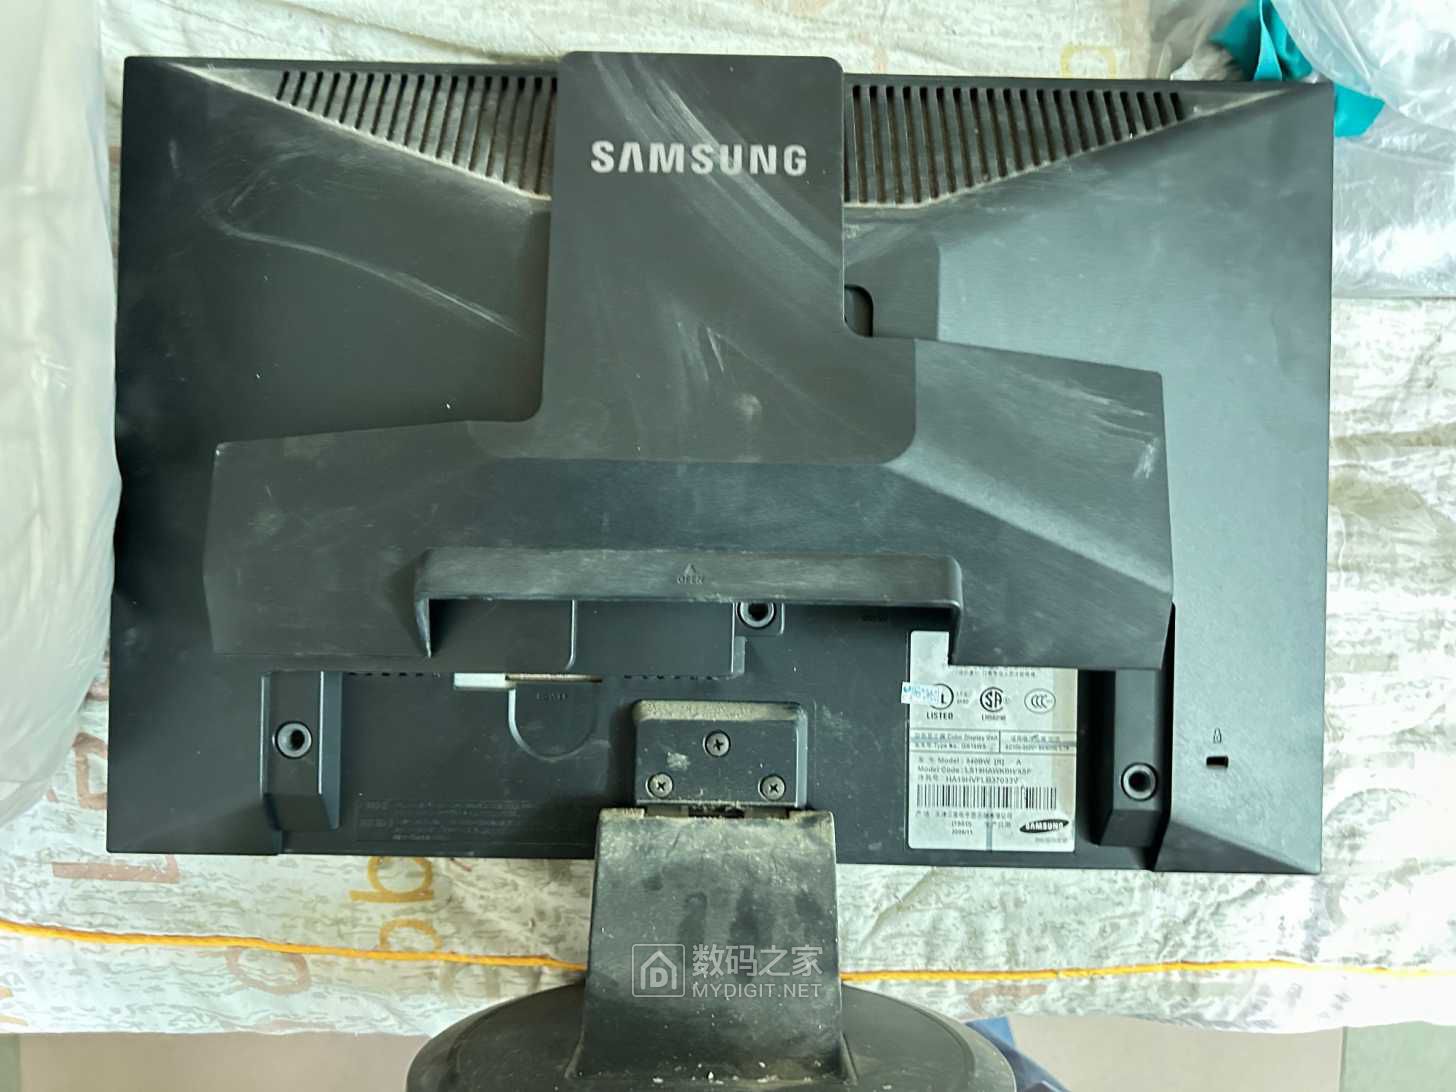 Monitor Samsung SyncMaster 940BW | Skwierzyna | Kup teraz na Allegro ...